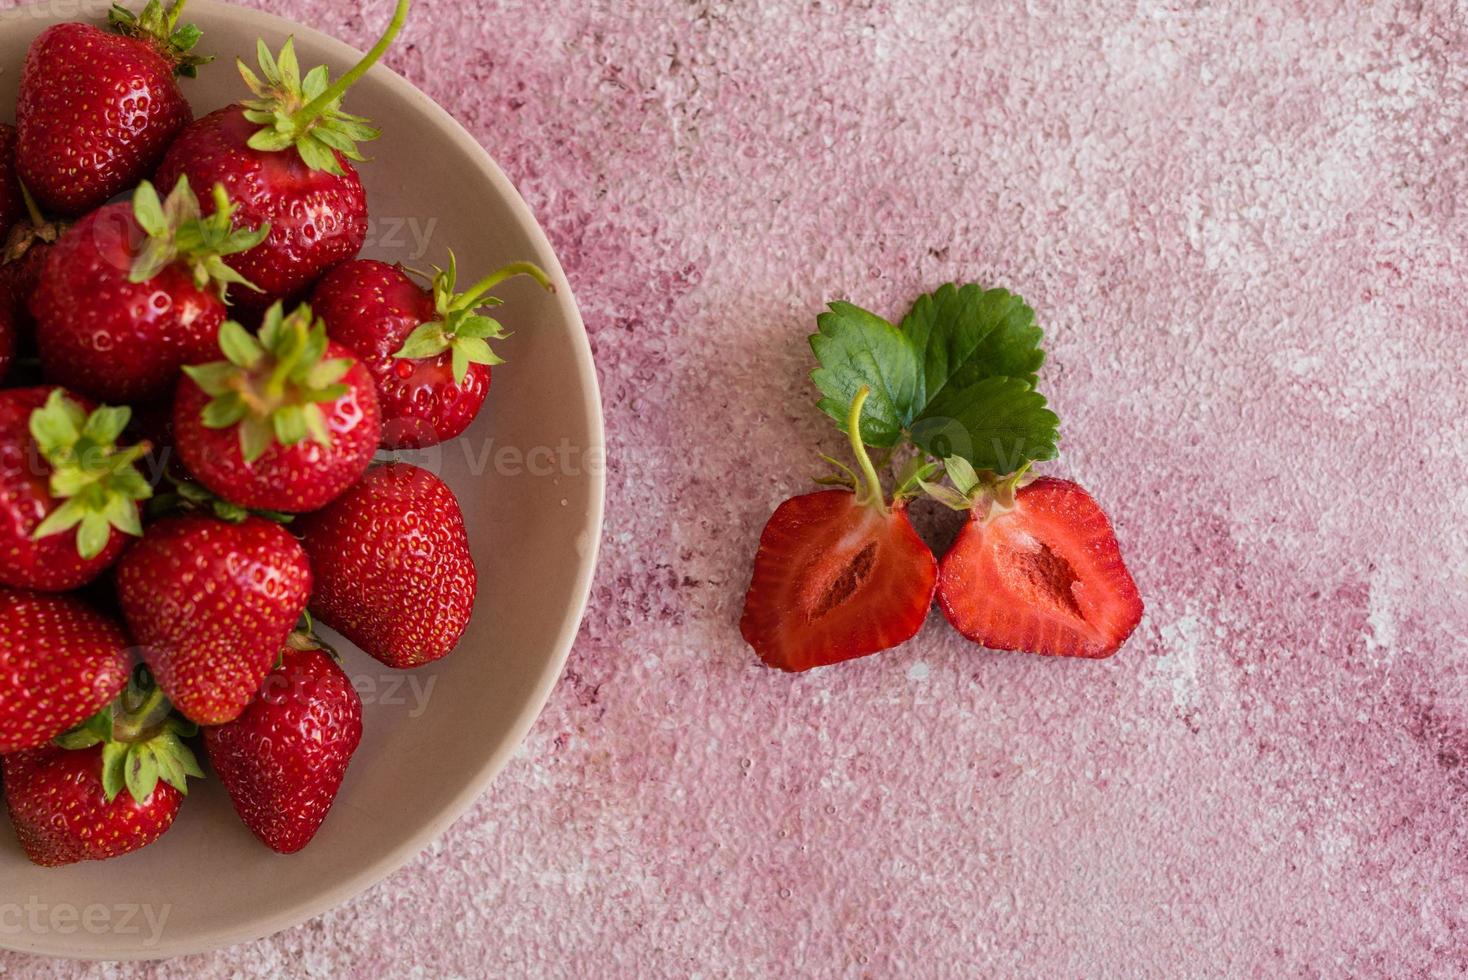 tas de fraises fraîches dans un bol en céramique photo